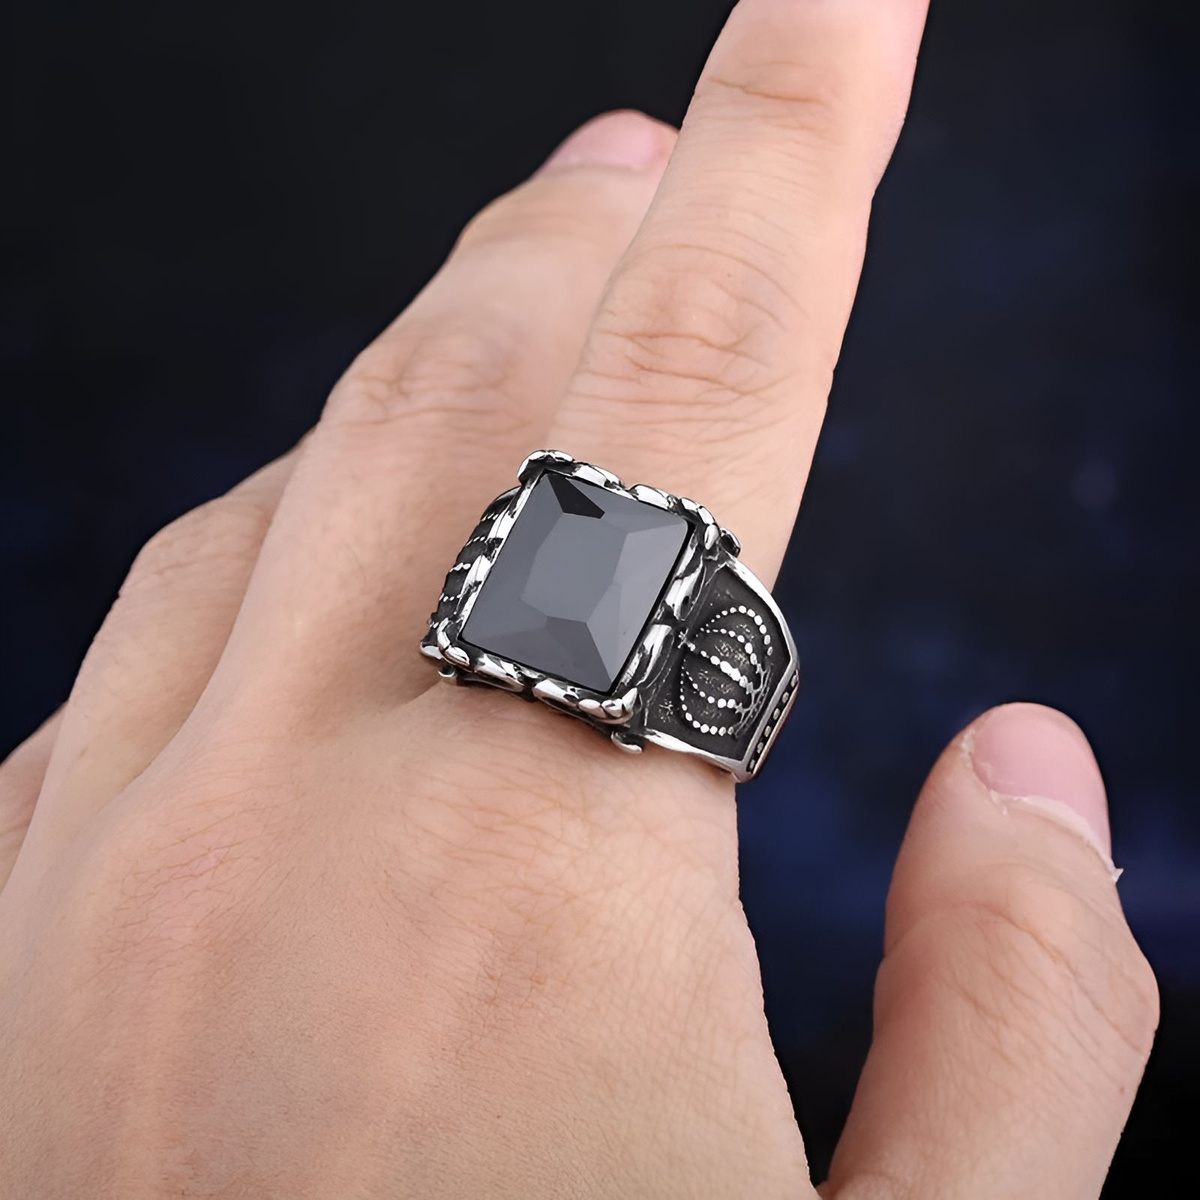 Кольцо с черным камнем, кольцо с черным агатом, кольцо с черным камнем бижутерия, кольцо с черным камнем серебро, перстень с черным камнем, перстень с черным агатом, печатка с черным камнем, кольцо черный камень черный агат перстень черный печатка мужская